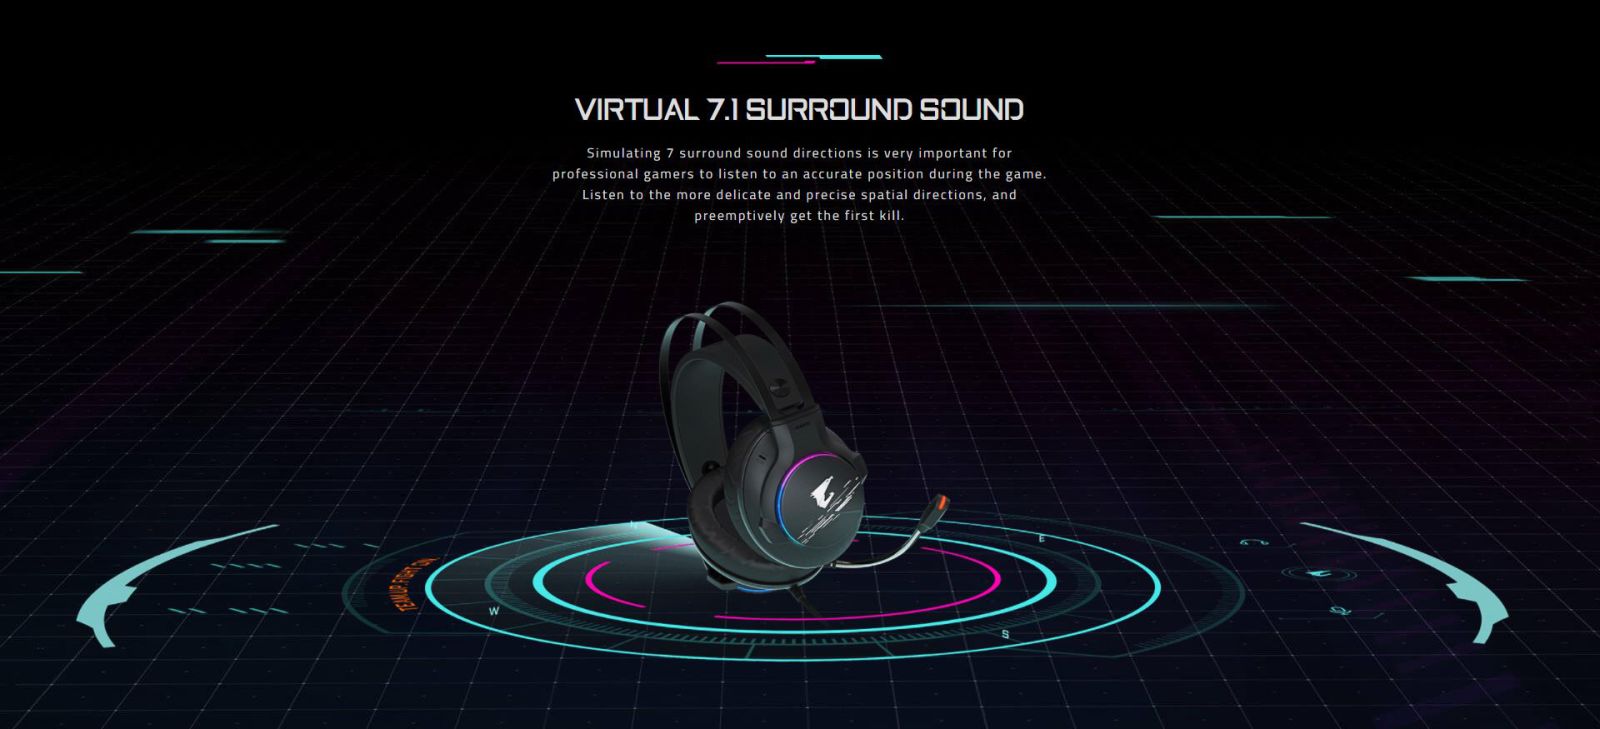 Virtual 7.1 Surround Sound